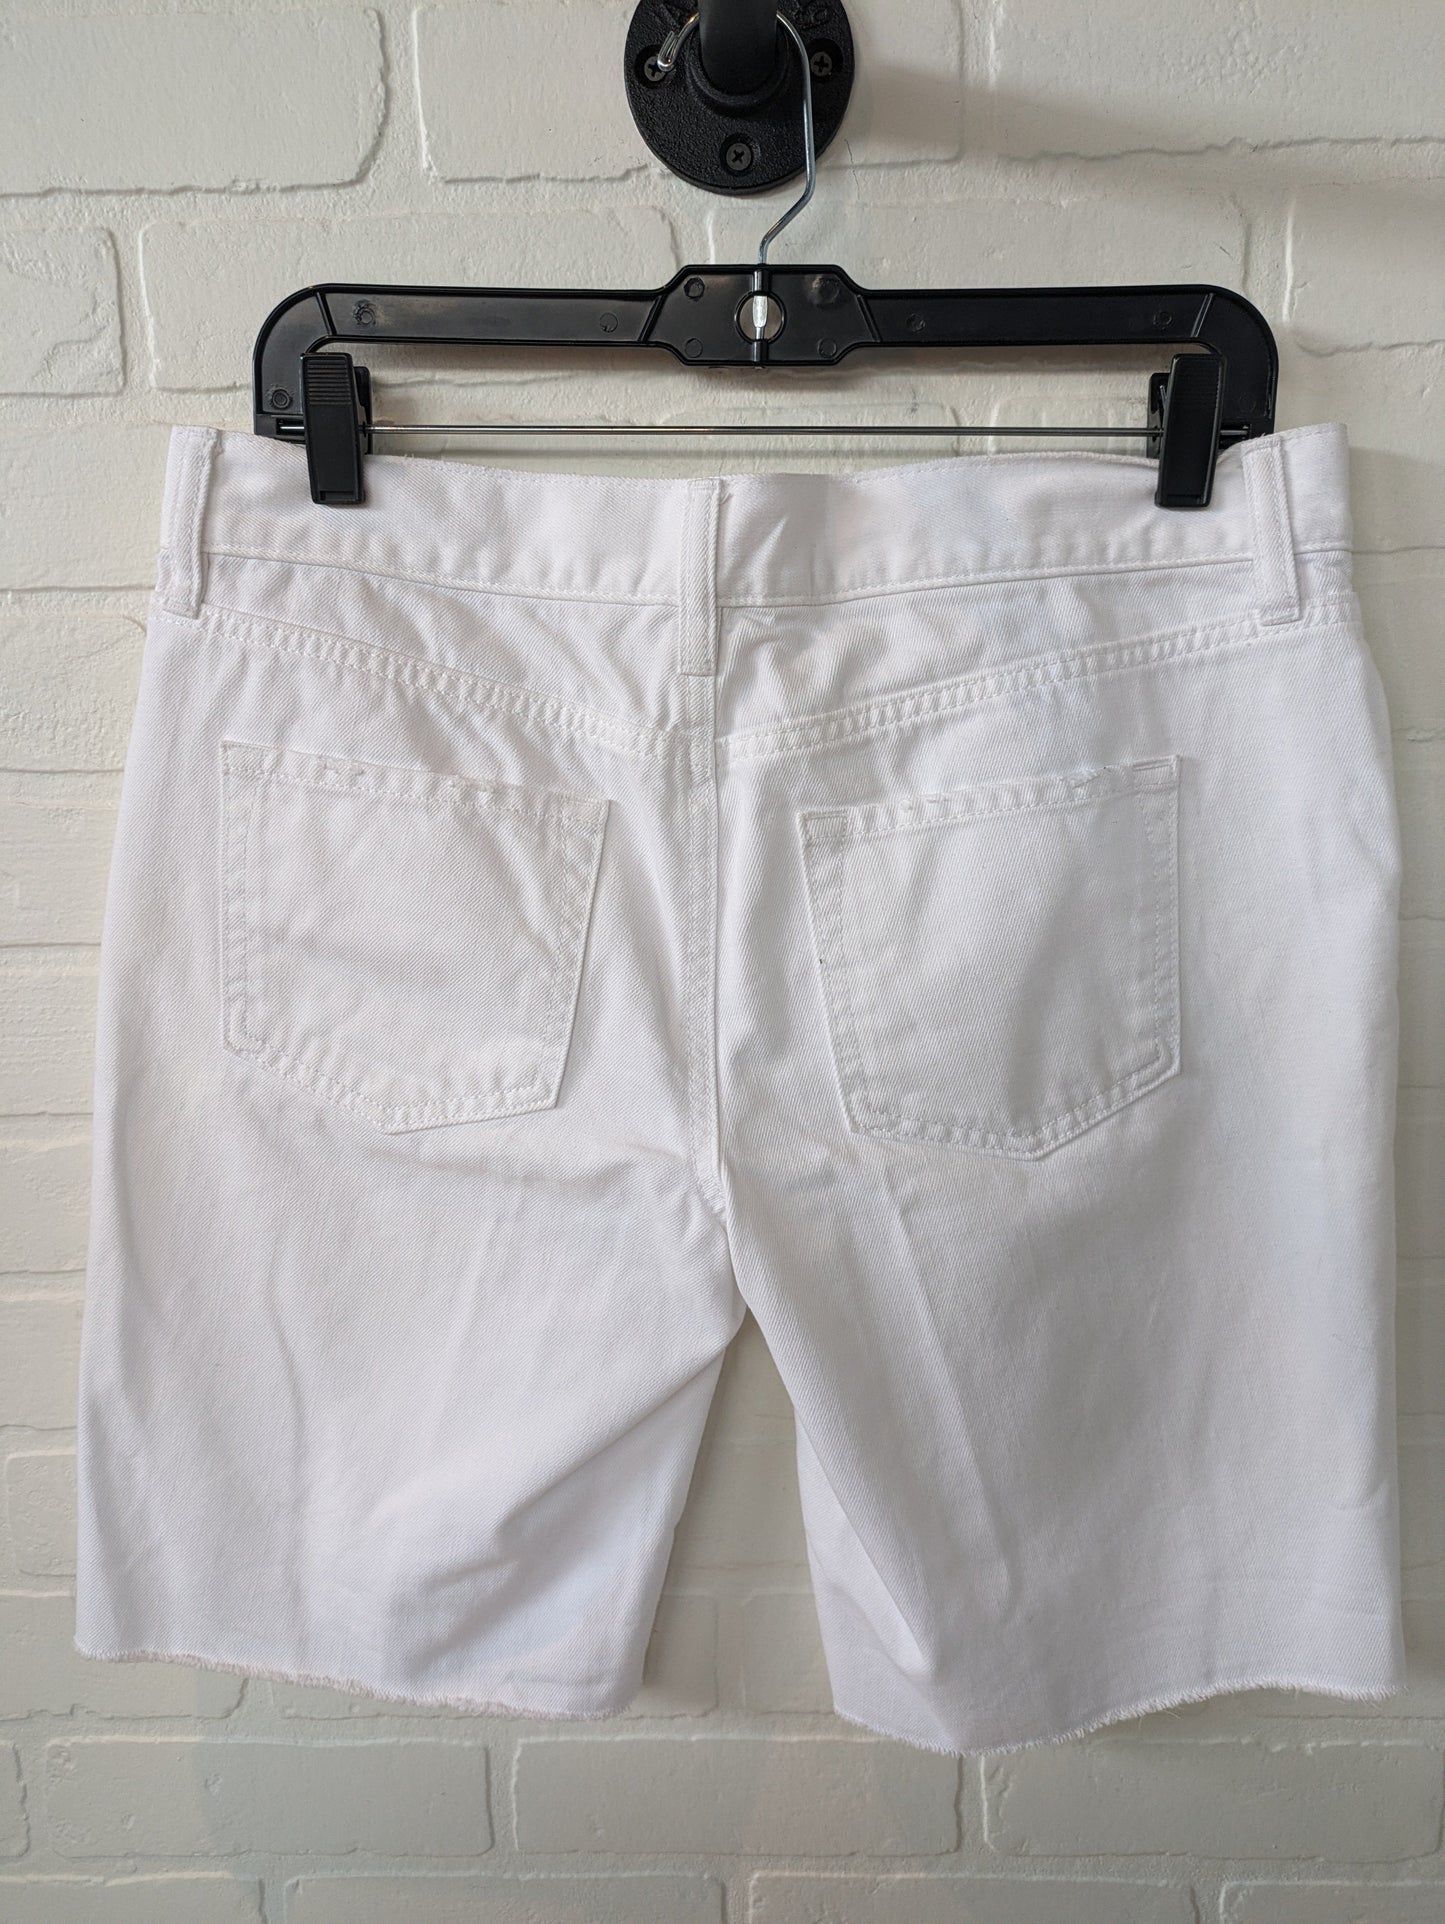 Shorts By Loft  Size: 4